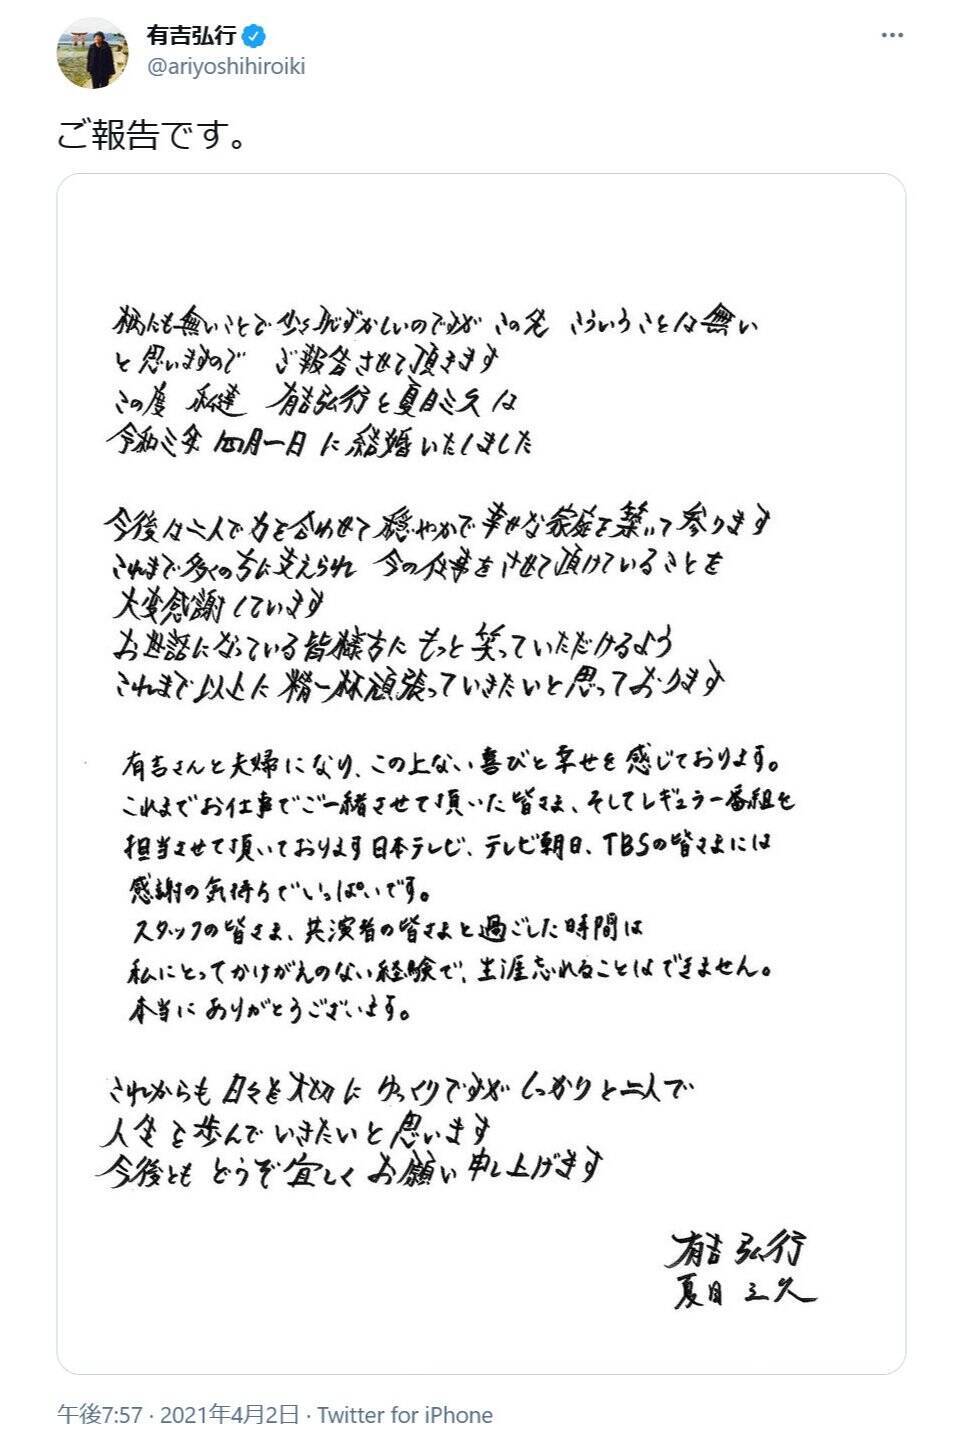 有吉弘行さんと夏目三久さんが4月1日に結婚 お二人の直筆メッセージで報告 16年には熱愛報道も 21年4月2日 エキサイトニュース